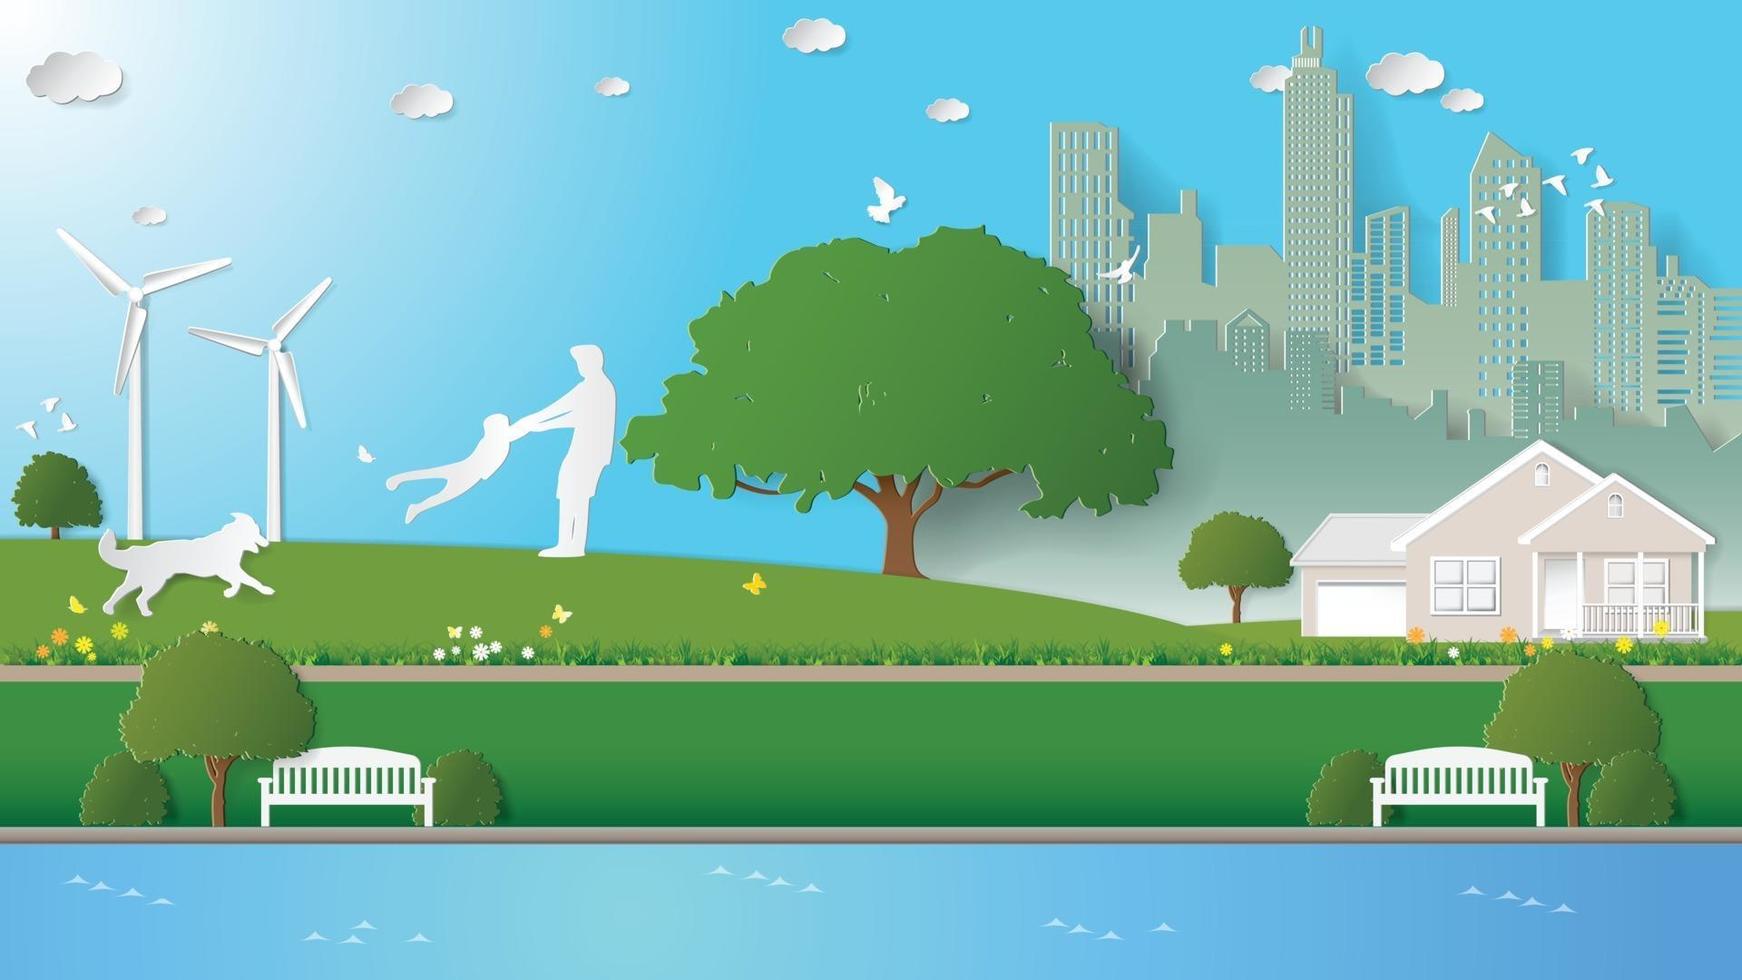 Papierfaltkunst Origami-Stil Vektor-Illustration grüne erneuerbare Energie Ökologie Technologie energiesparende umweltfreundliche Konzepte Erholung von Vater und Sohn in den Parks in der Nähe der Stadt vektor